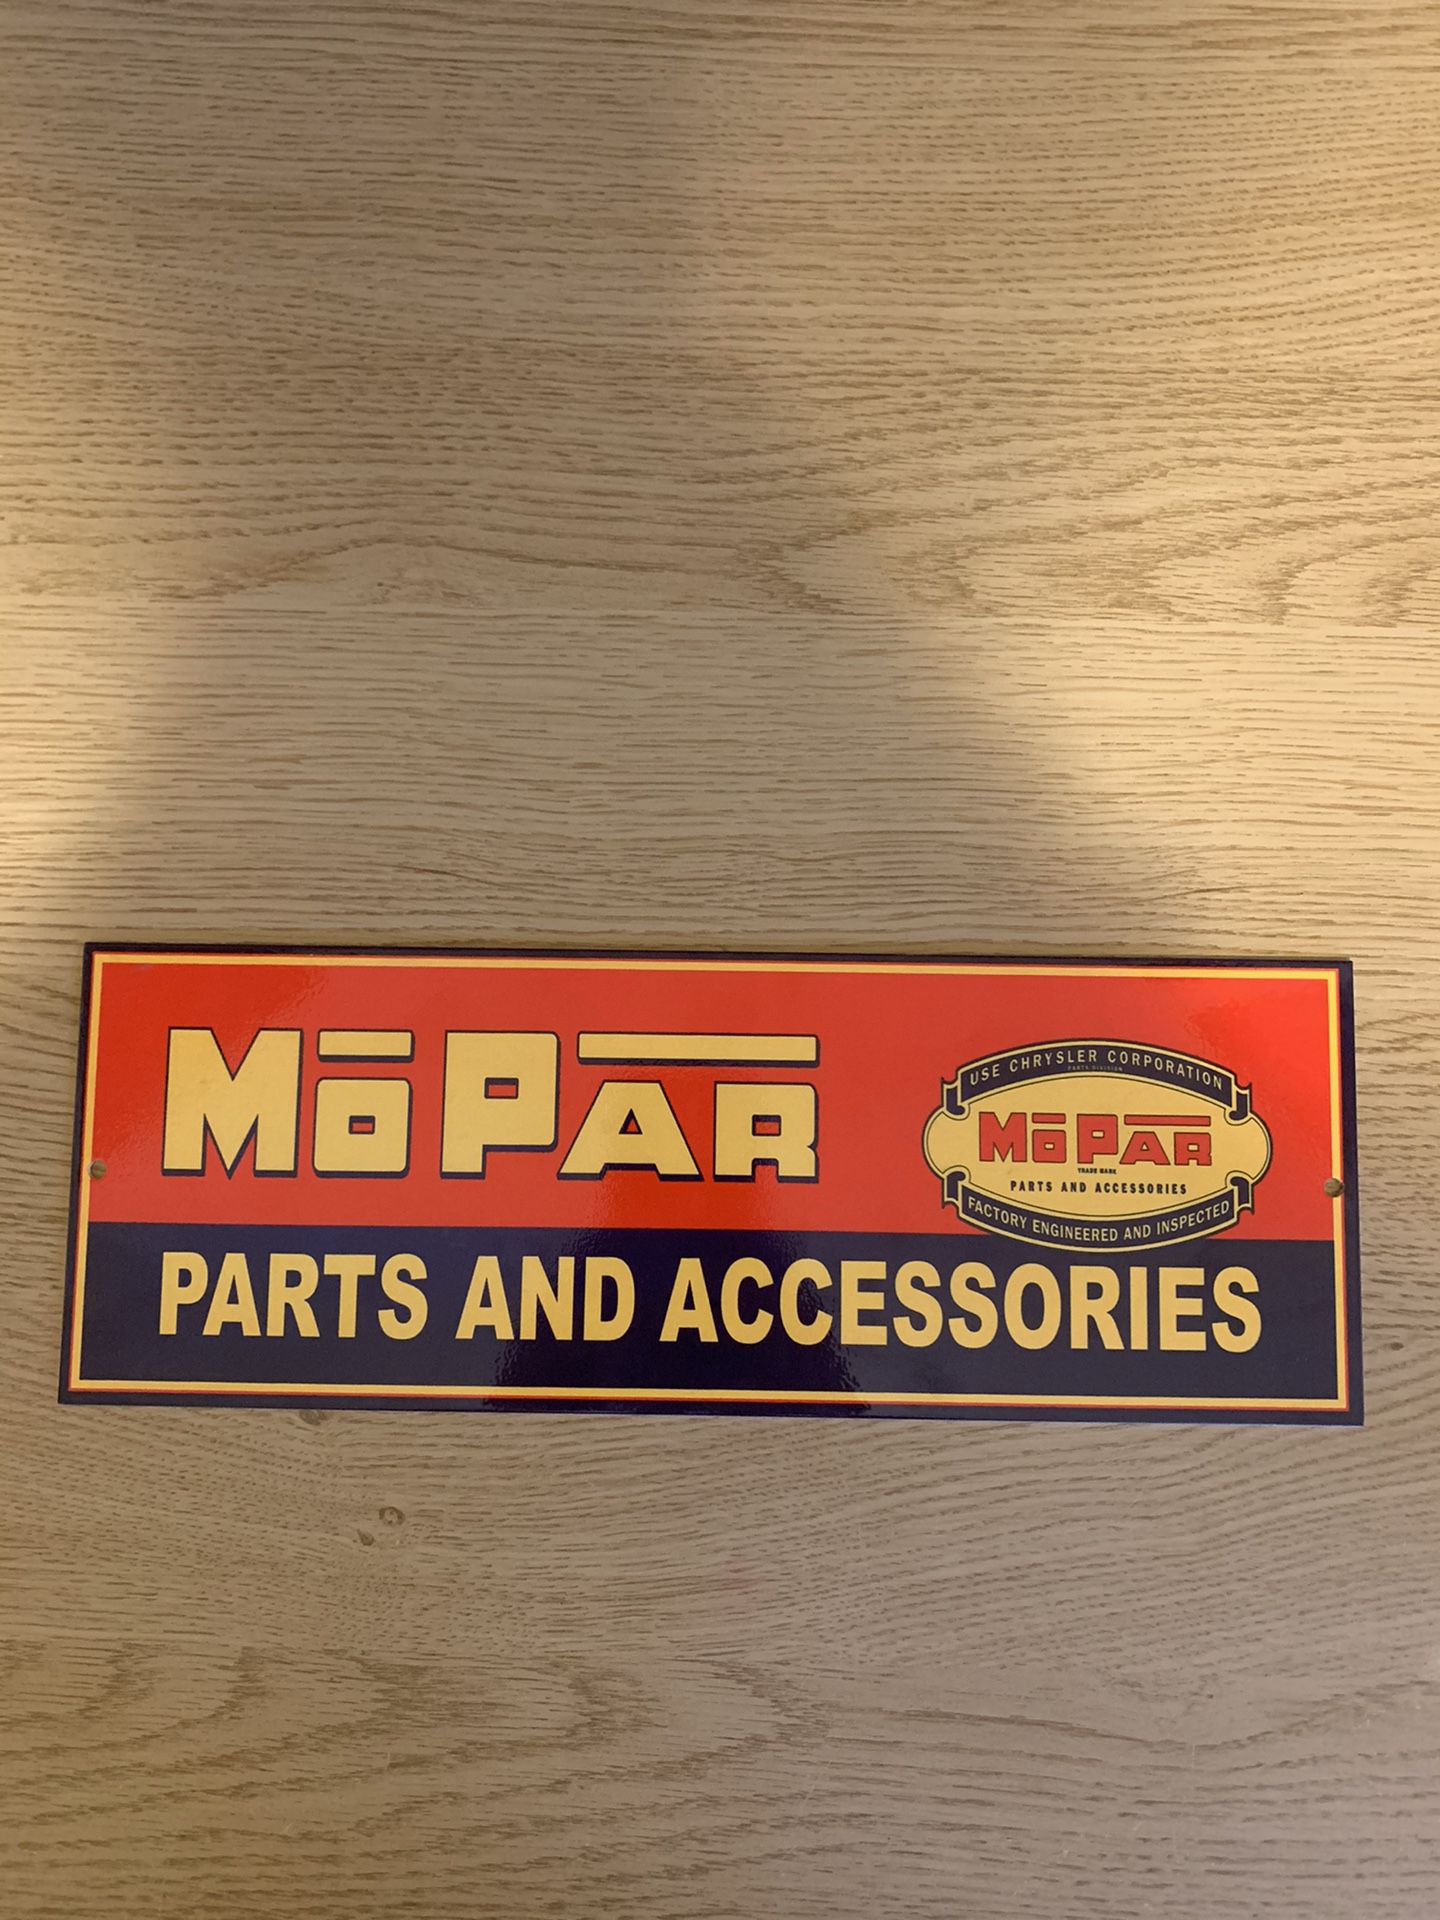 MOPAR Parts and Accessories porcelain sign